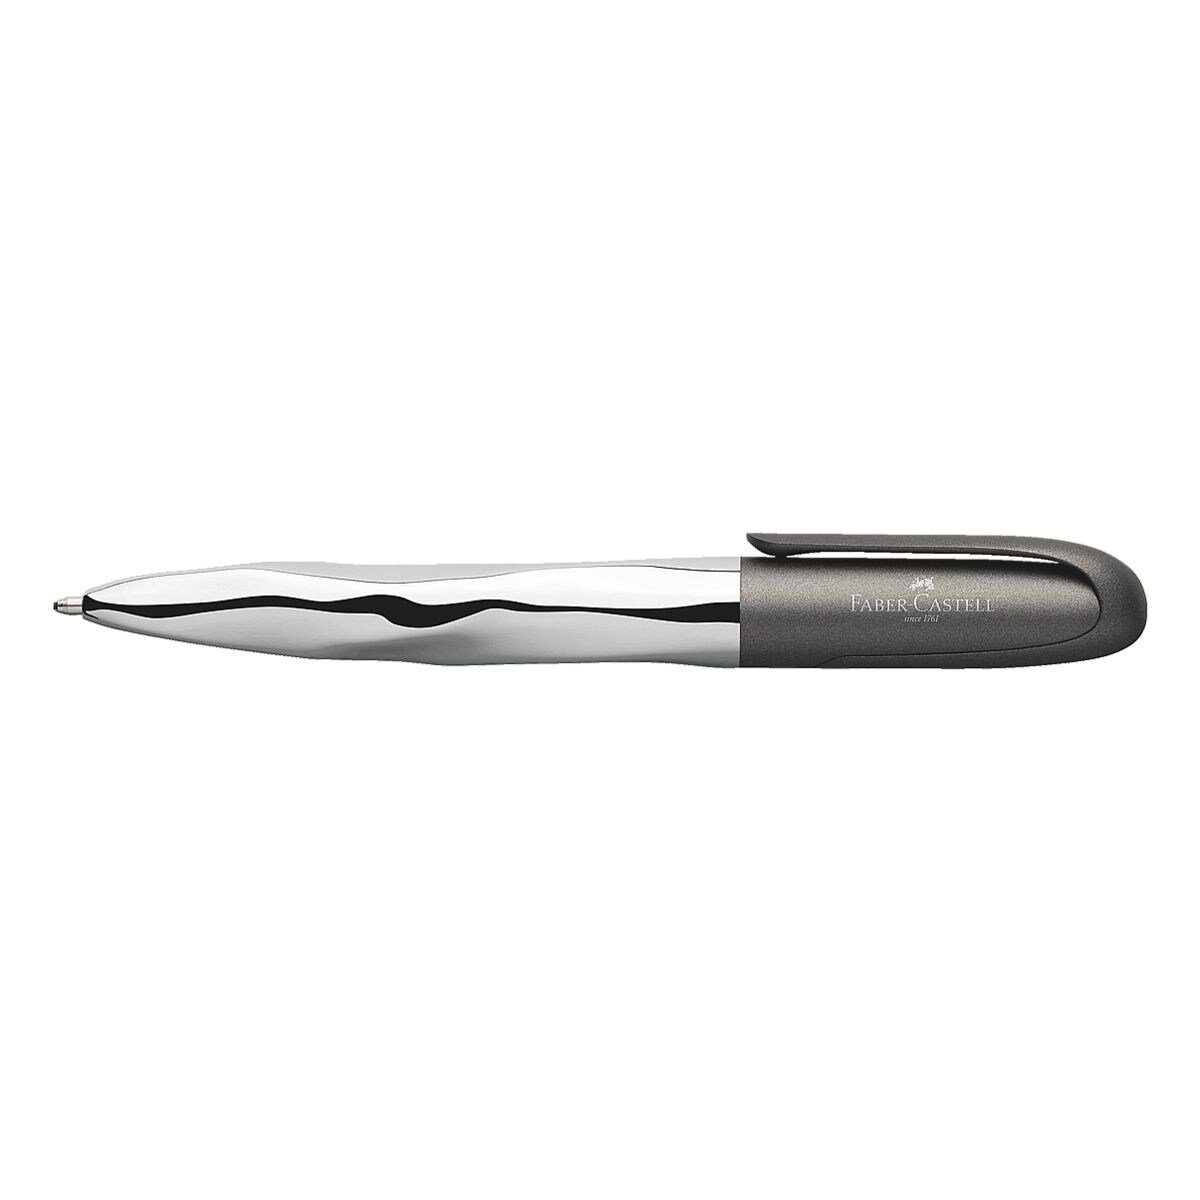 Faber-Castell Kugelschreiber n'ice pen Metallic, dokumentenecht grau